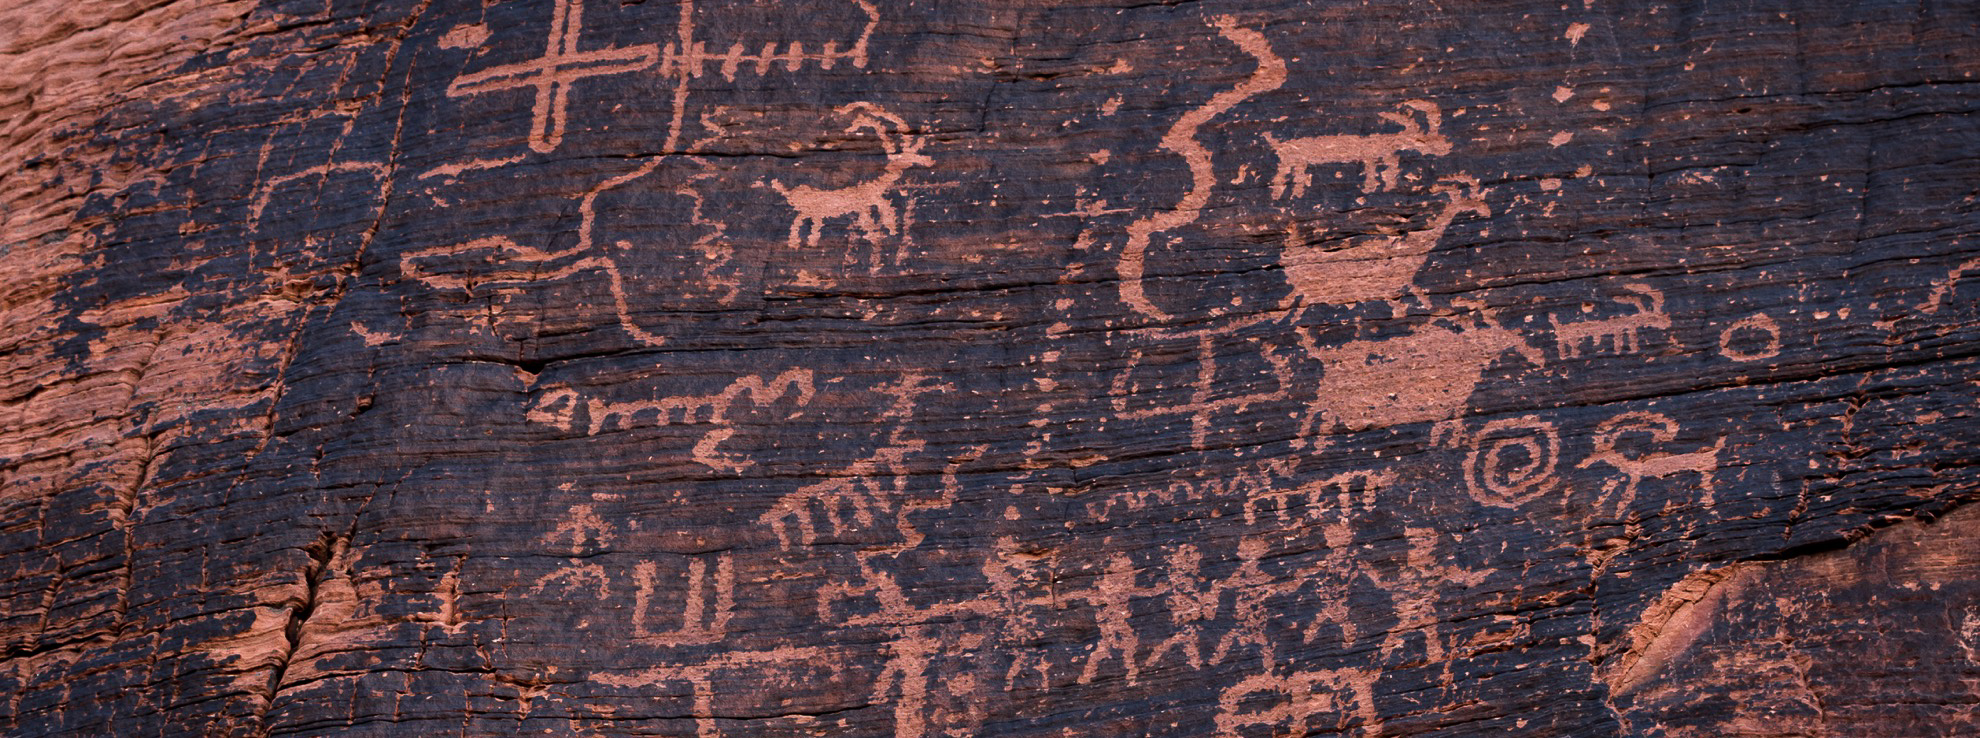 Dónde ver petroglifos en los Estados Unidos - 15